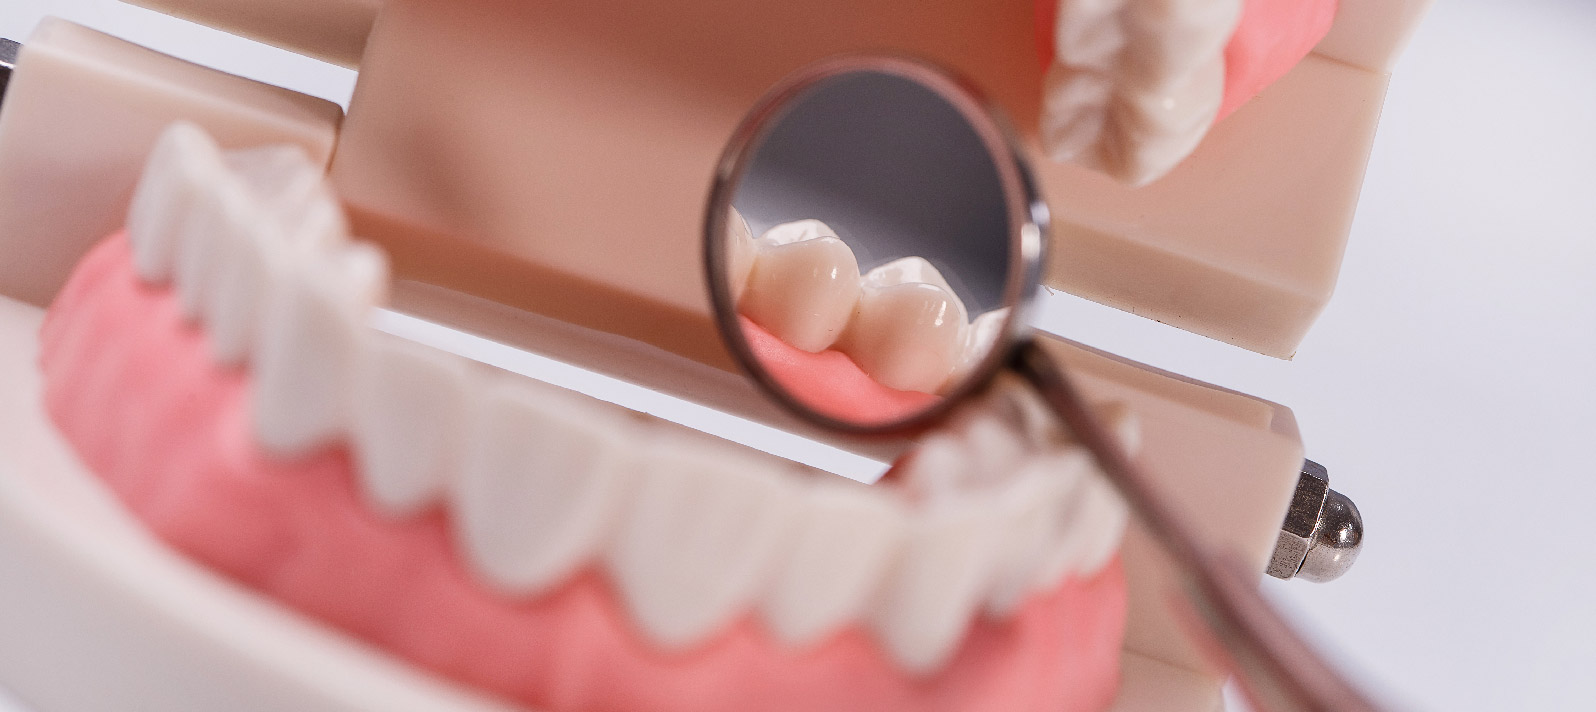 En Dental Roca examinamos tus encías